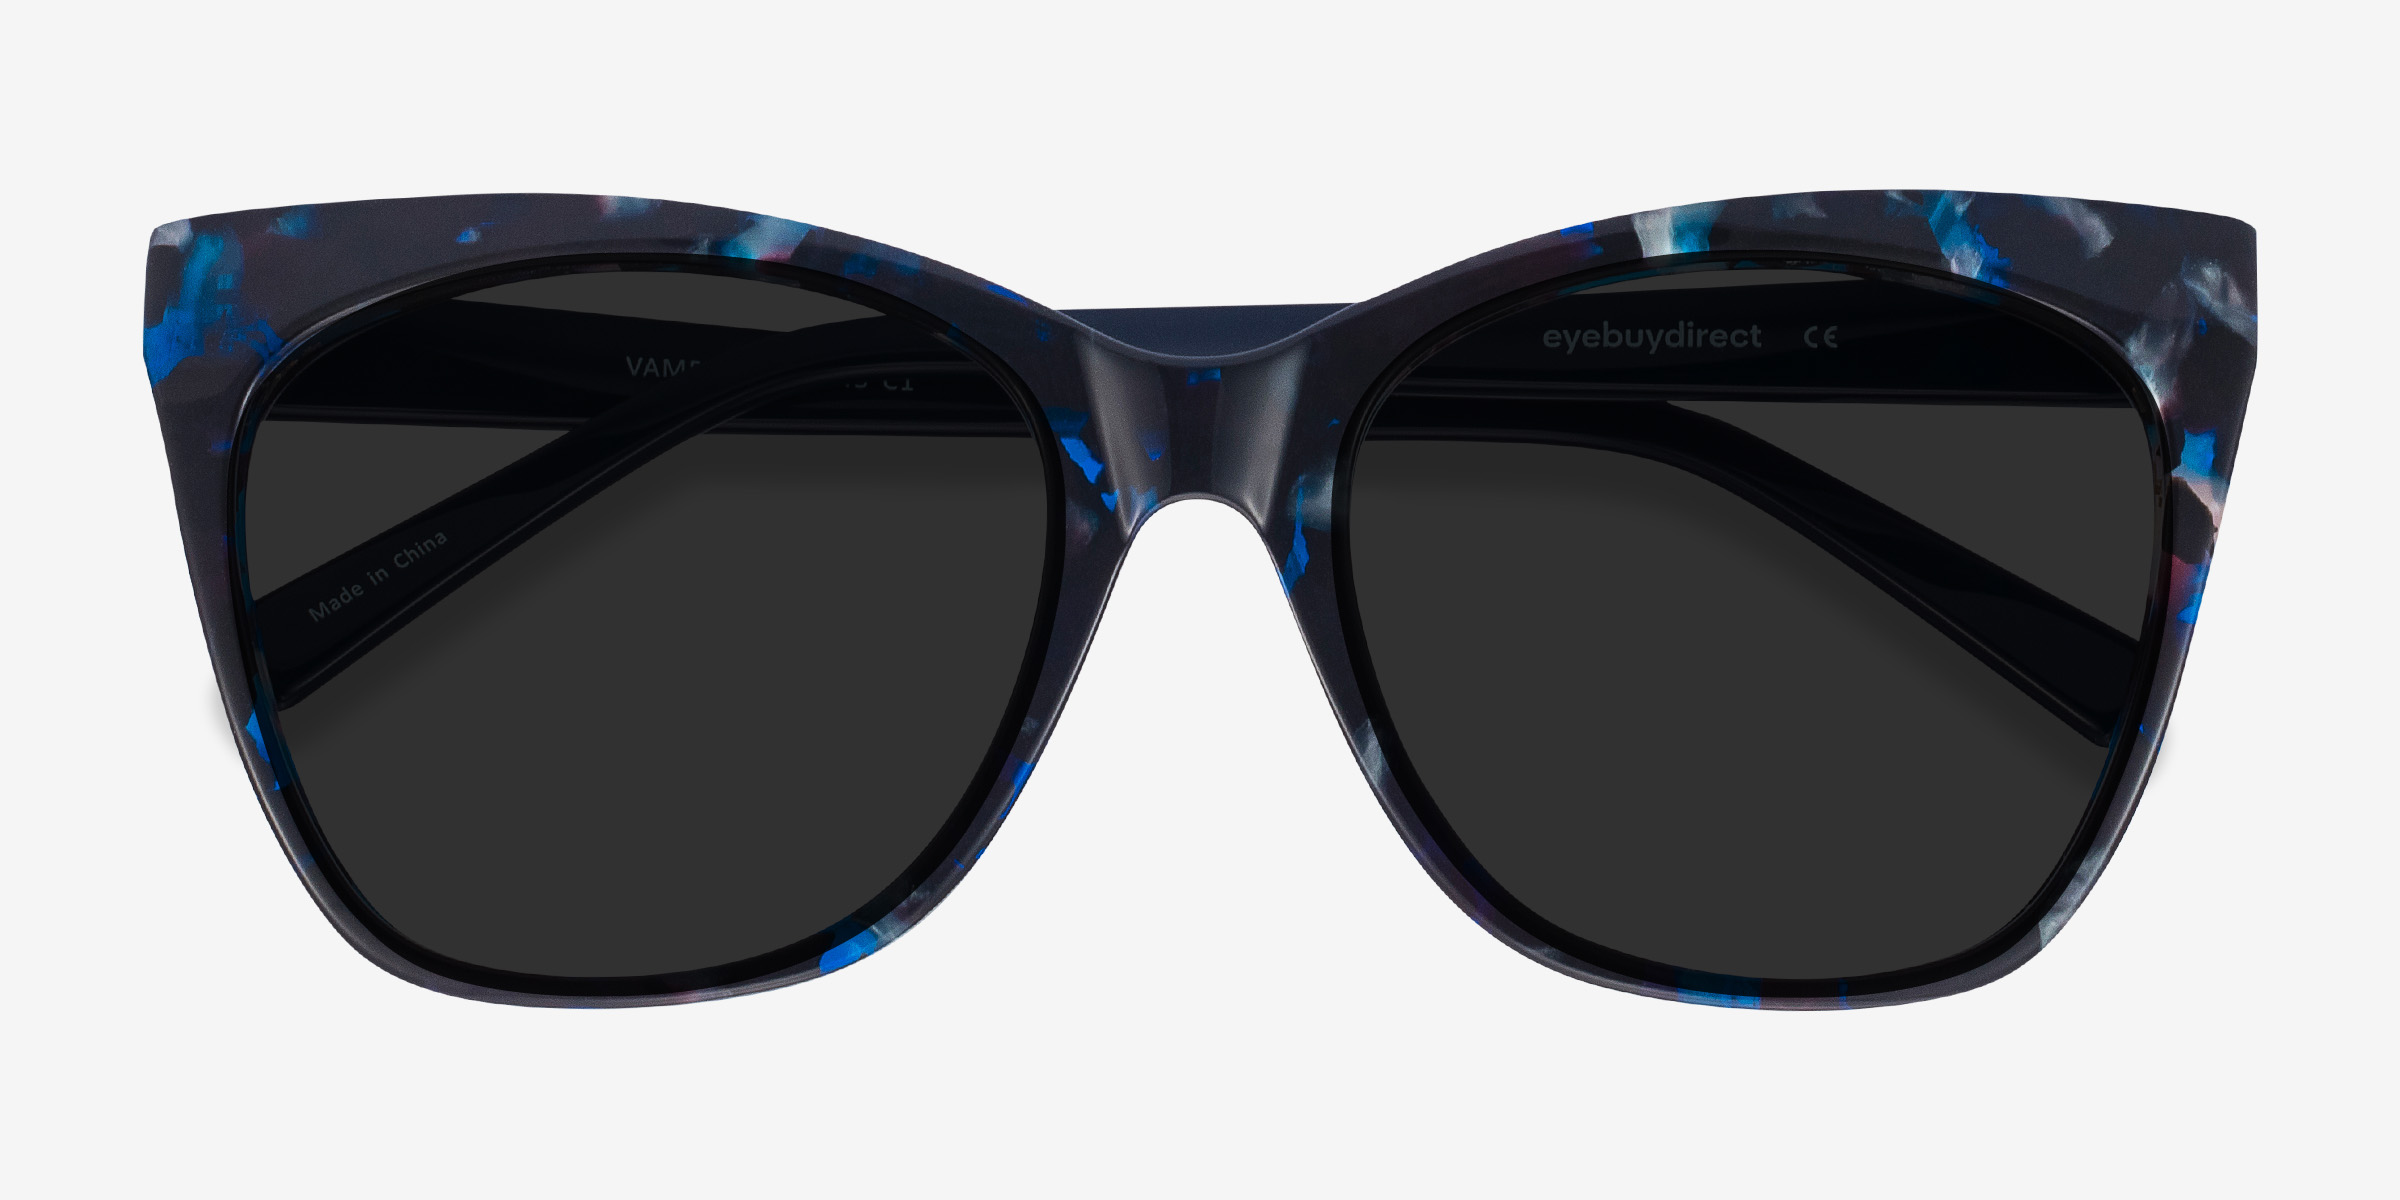 Vamp - Cat Eye Blue Floral Frame Sunglasses For Women | Eyebuydirect